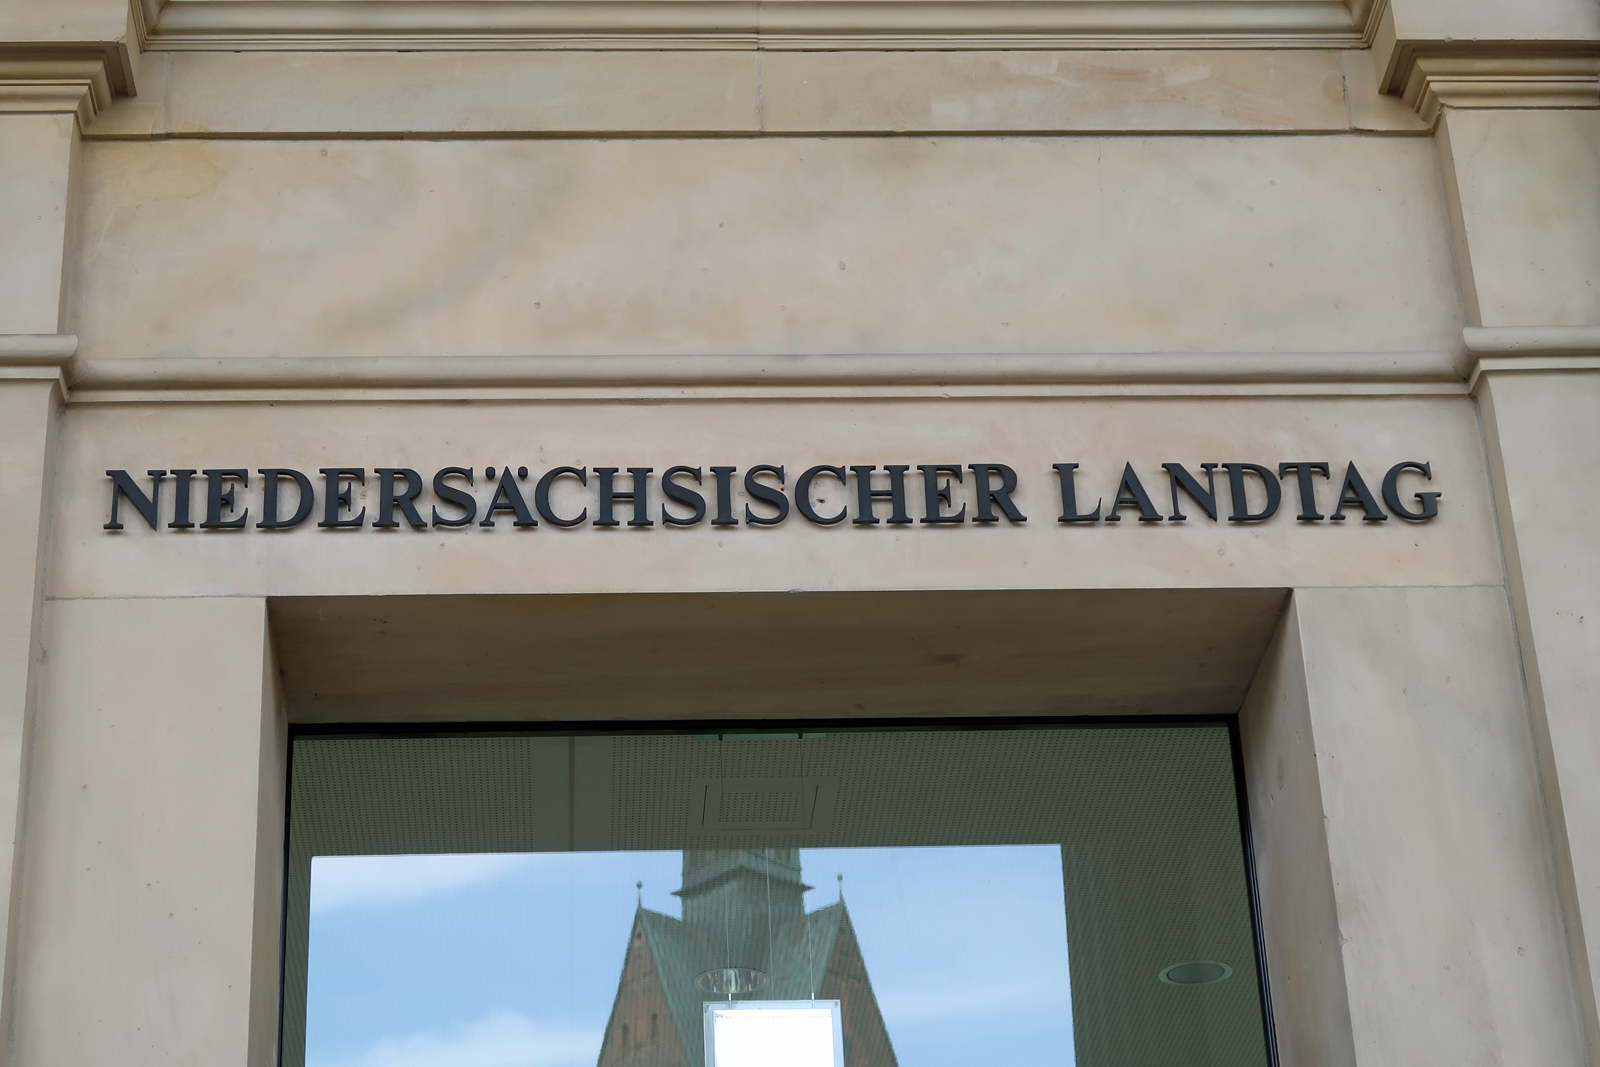 15 Hafensänger/innen waren auf Einladung der CDU zum Niedersächsichen Landtag nach Hannover gefahren 